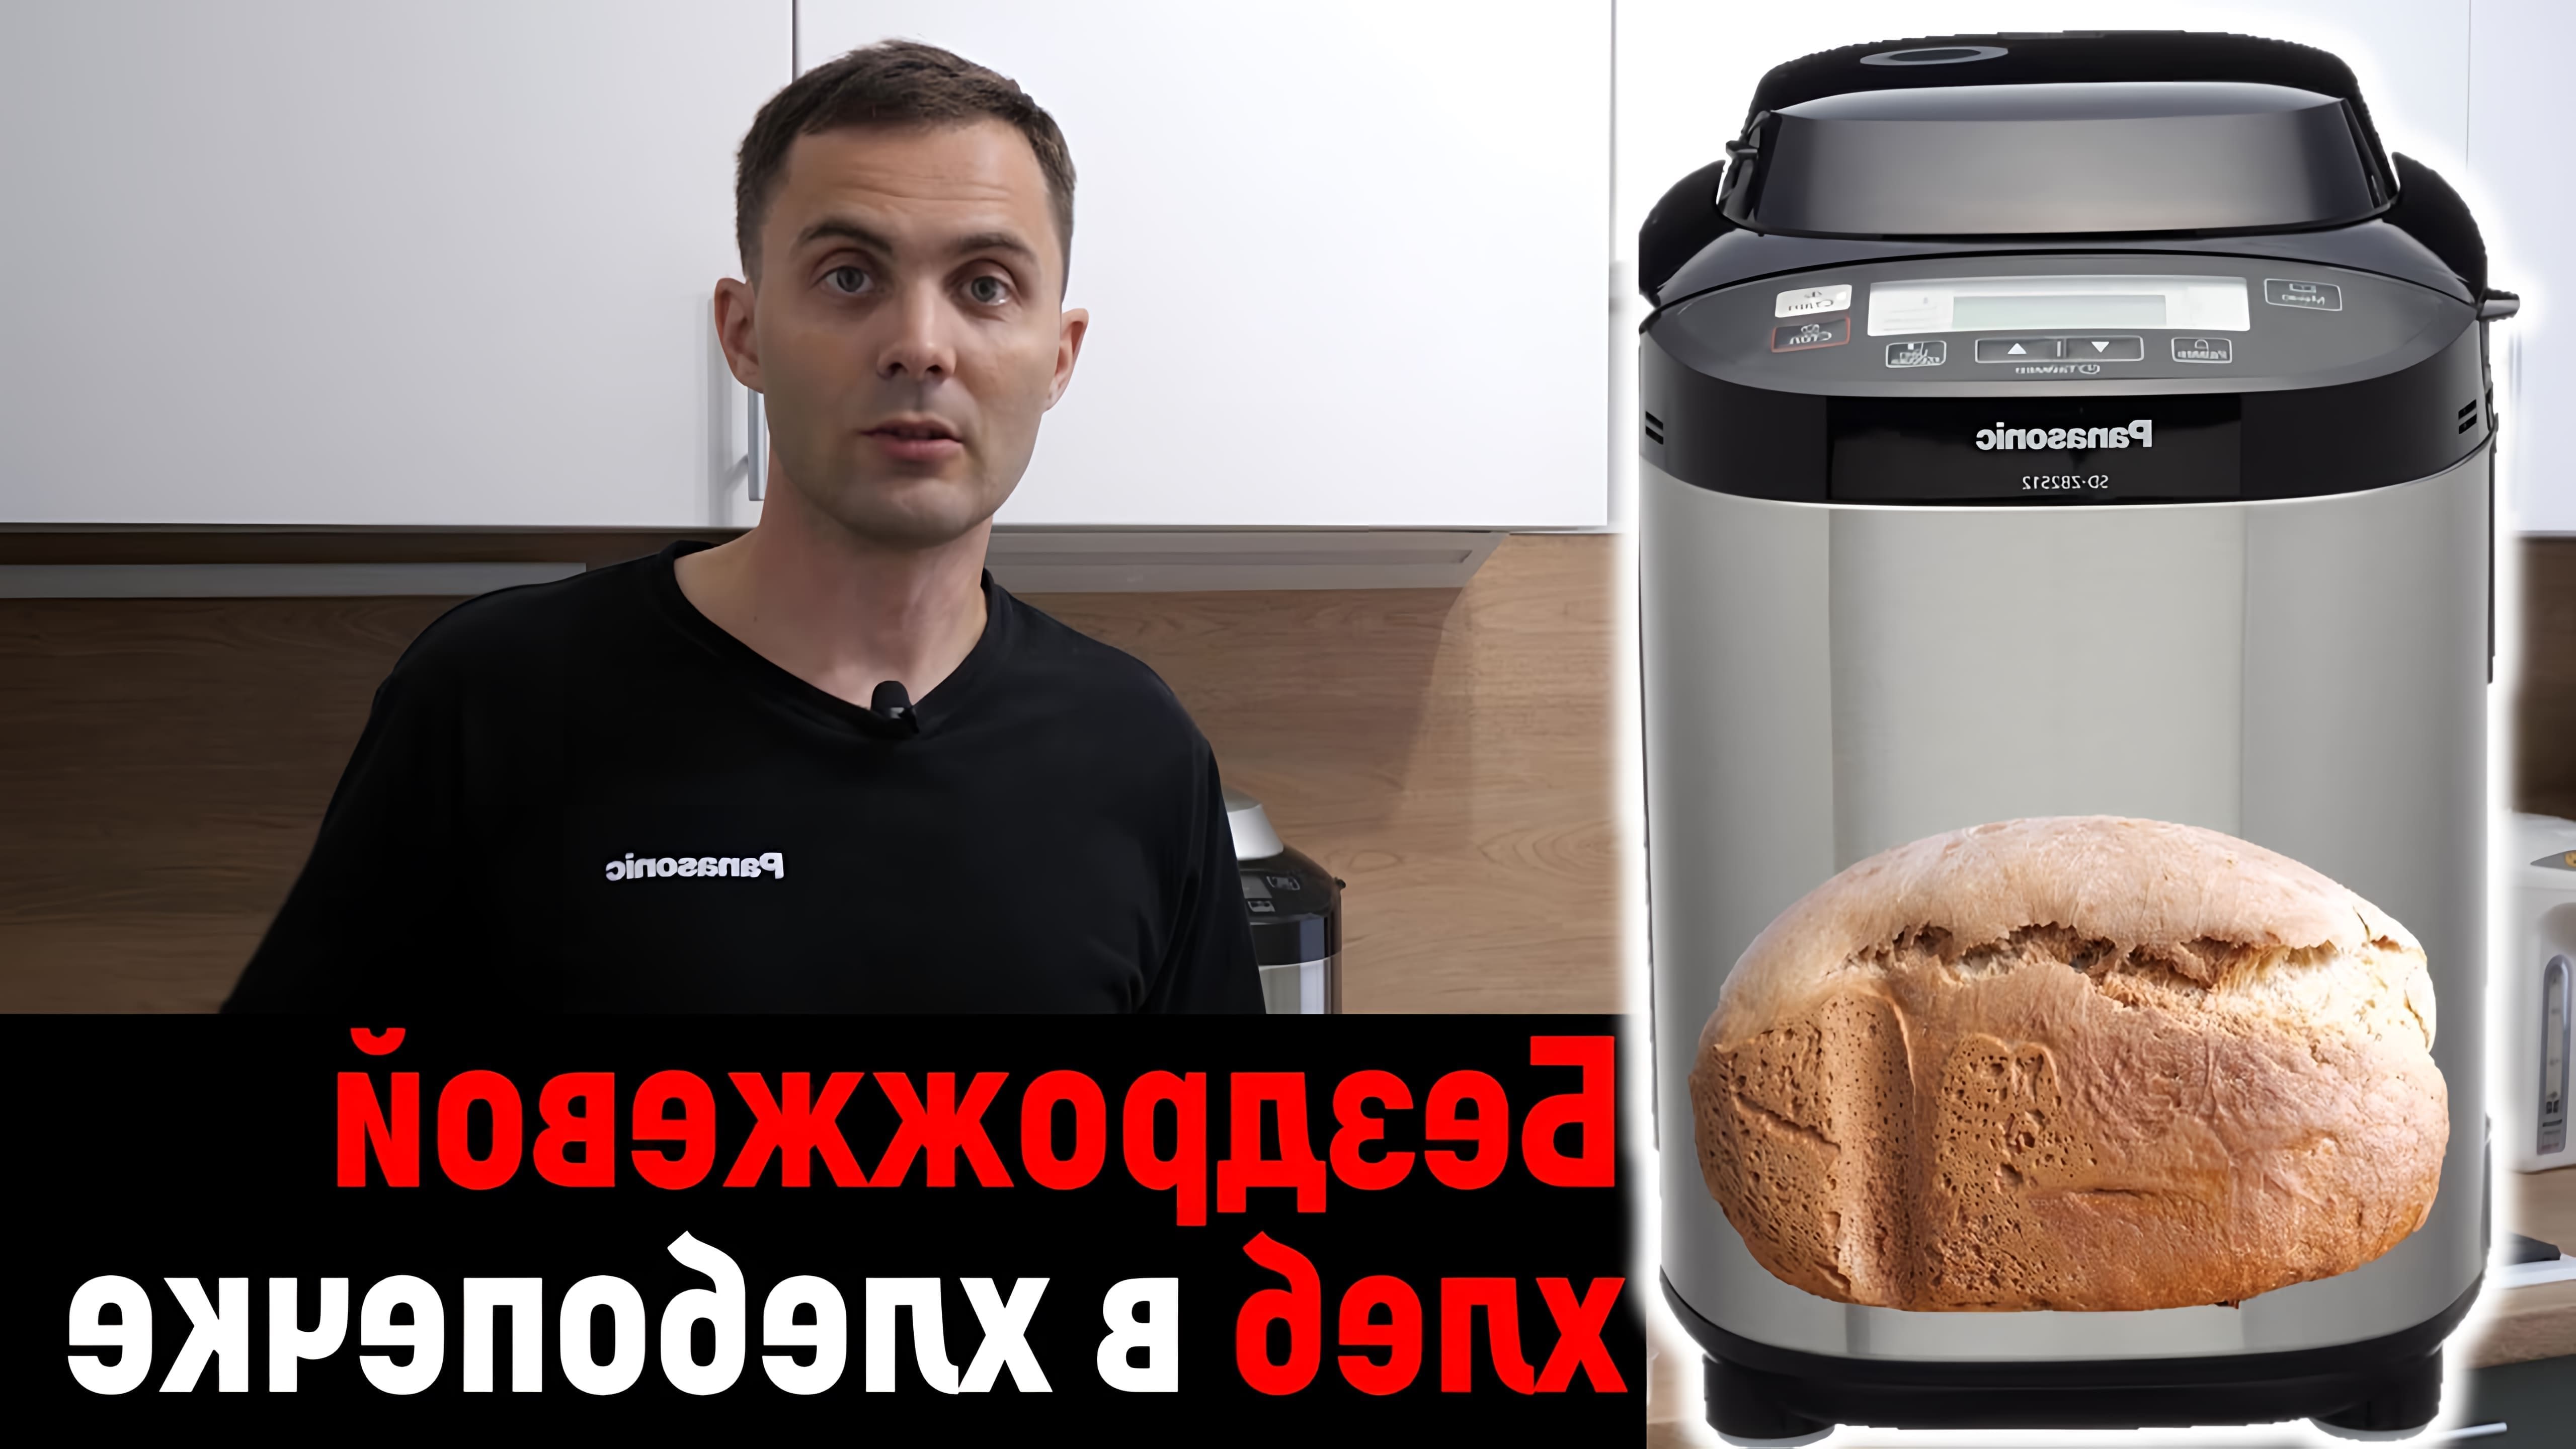 В этом видео Юлия Железнякова показывает, как приготовить бездрожжевой хлеб в хлебопечке Panasonic